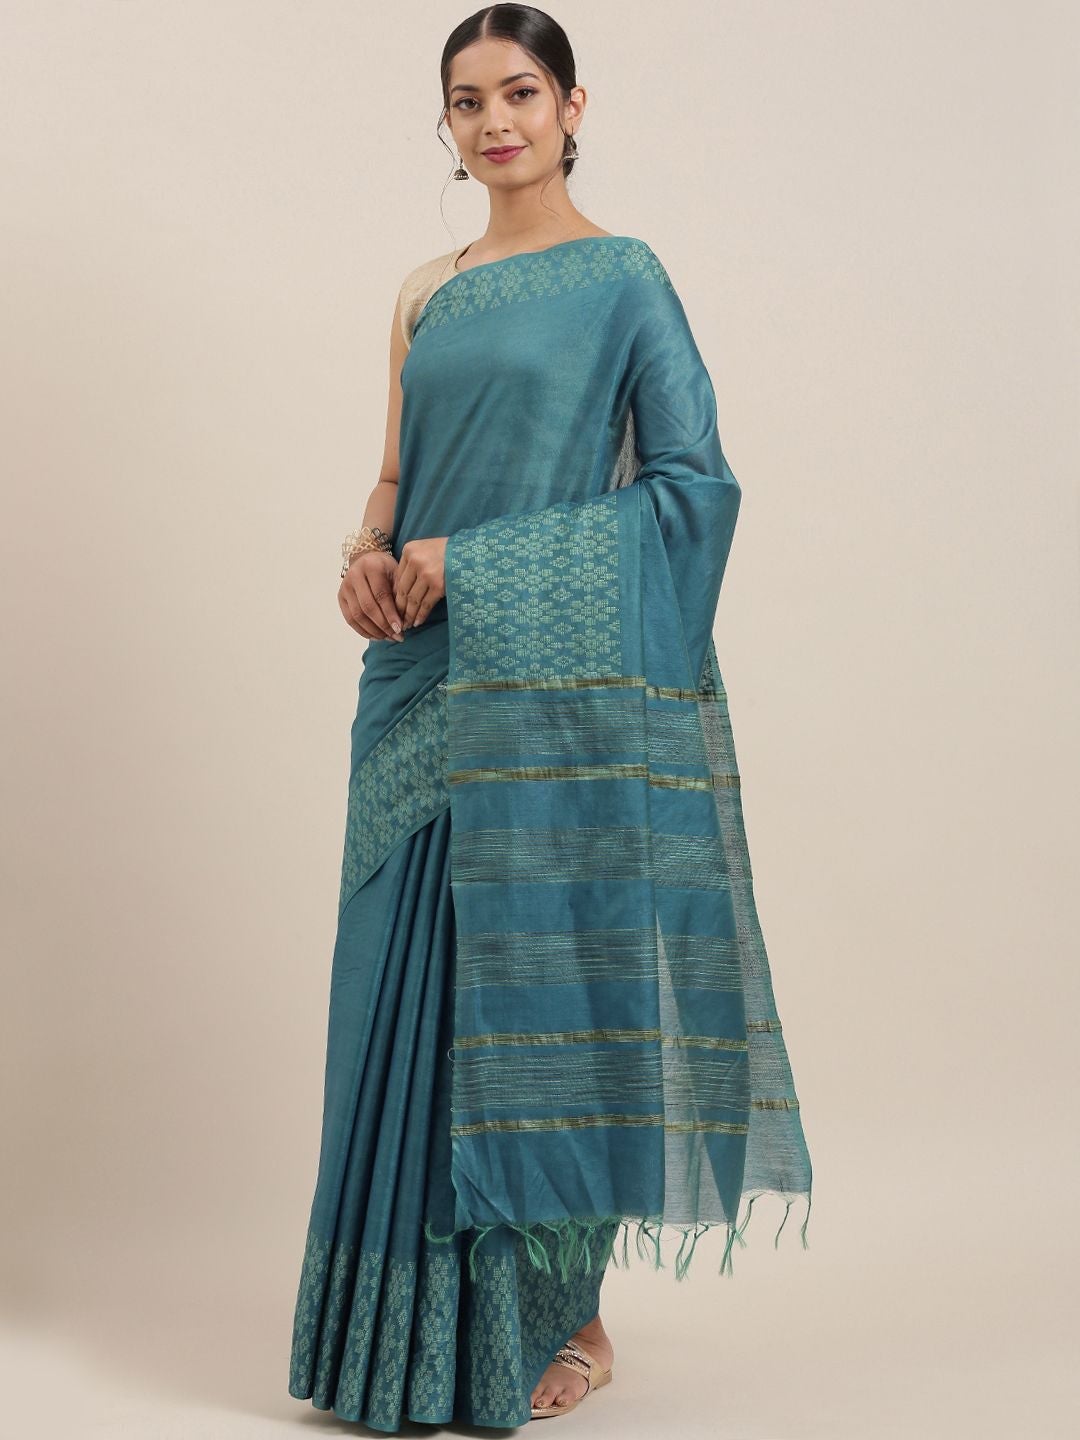 Women's Blue Art Silk Solid Handloom Muga Saree - Olive Mist